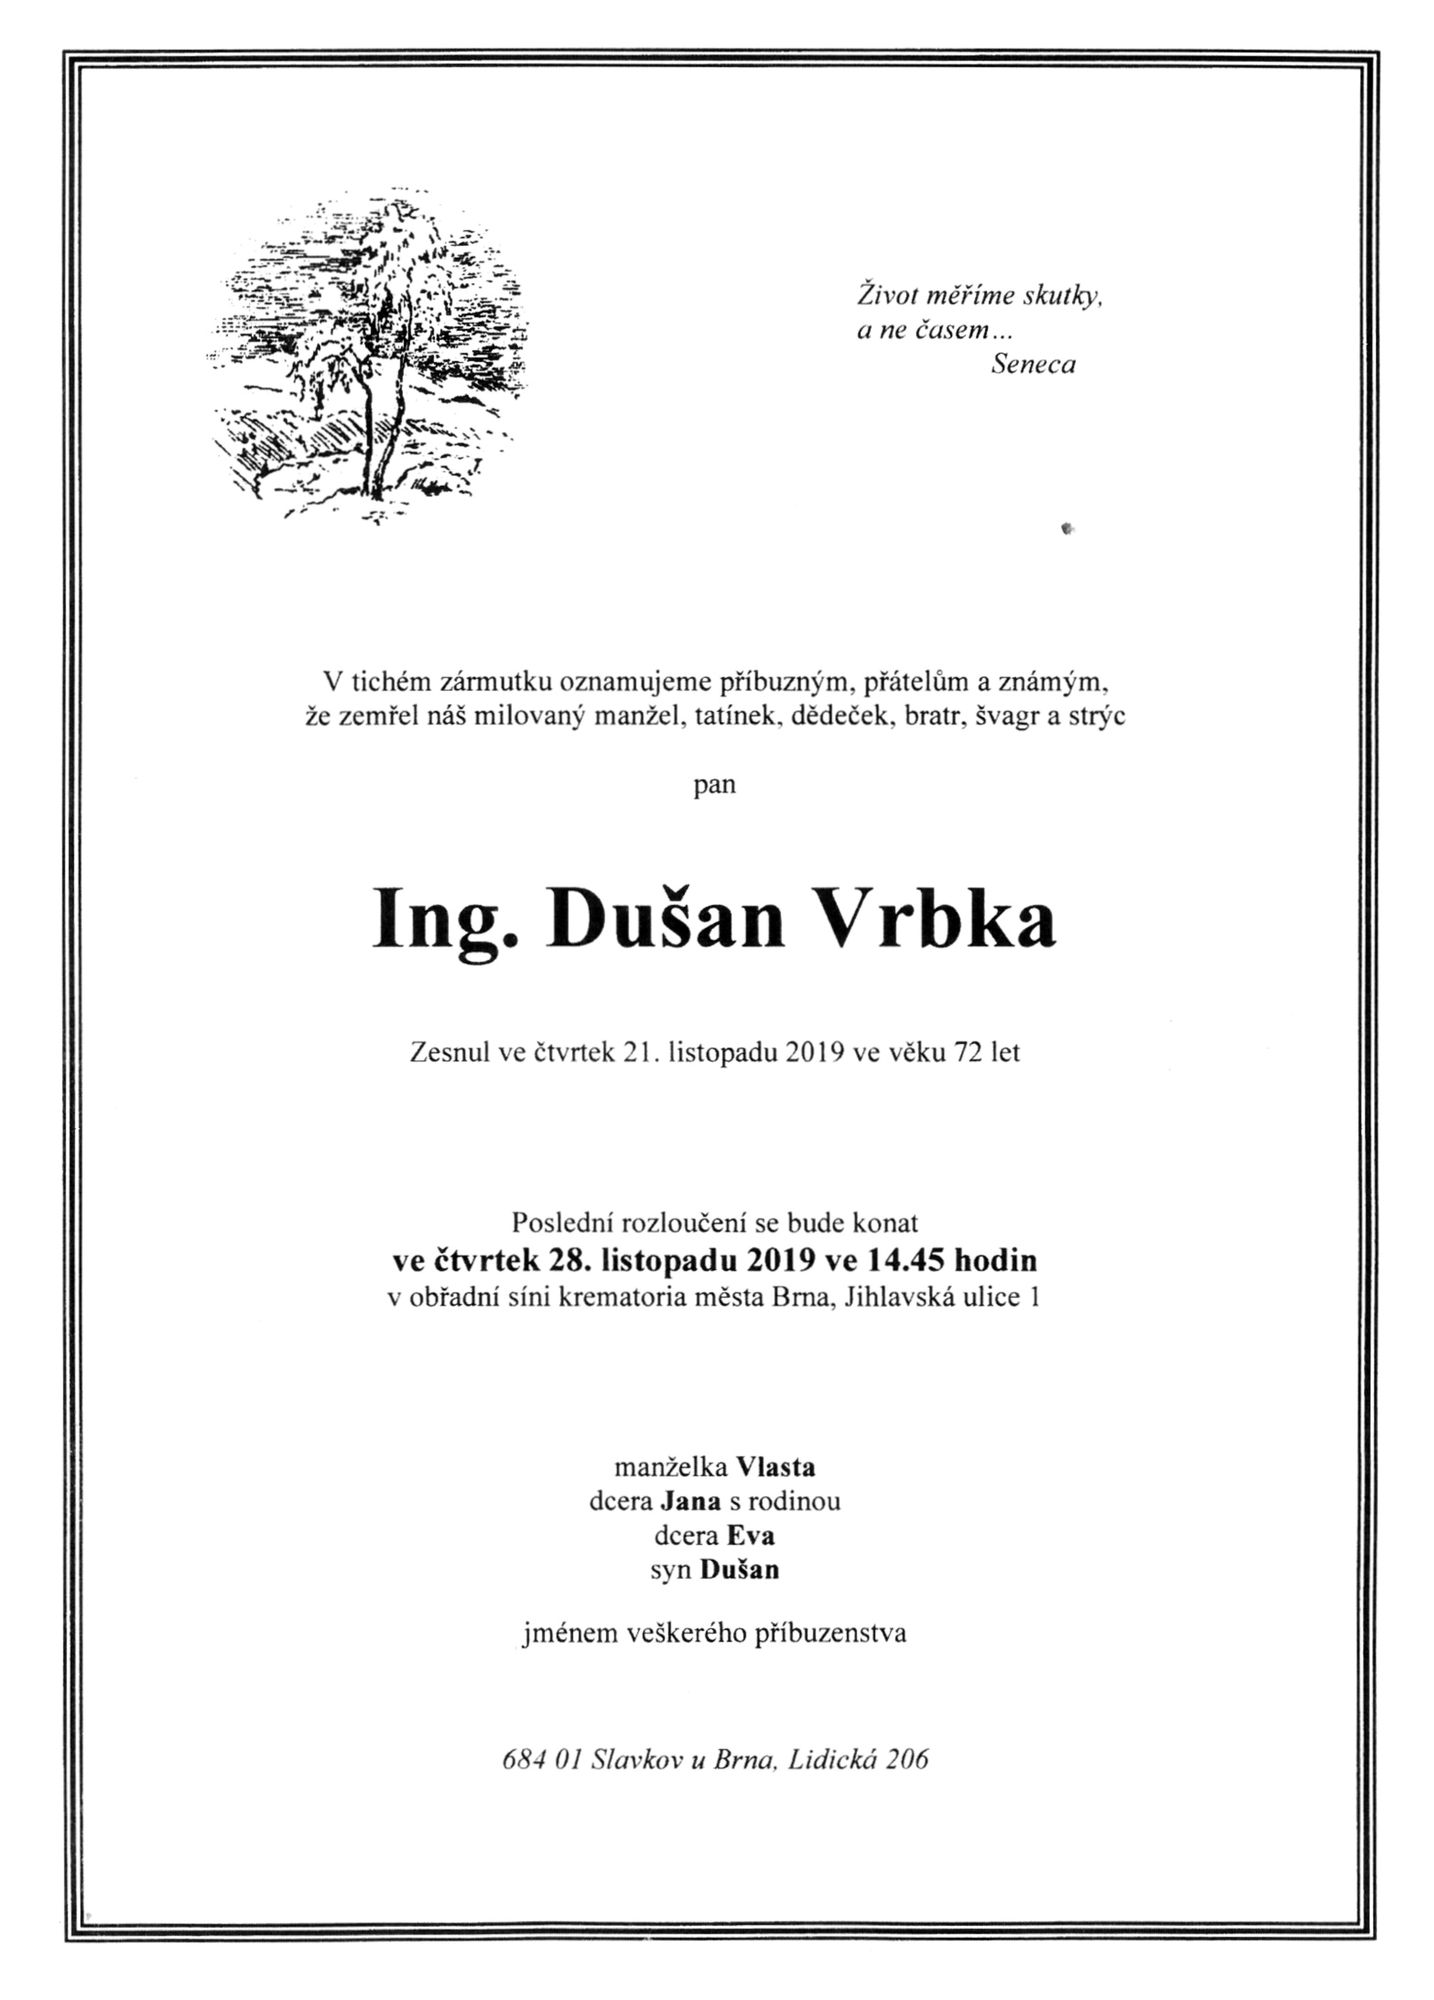 Ing. Dušan Vrbka